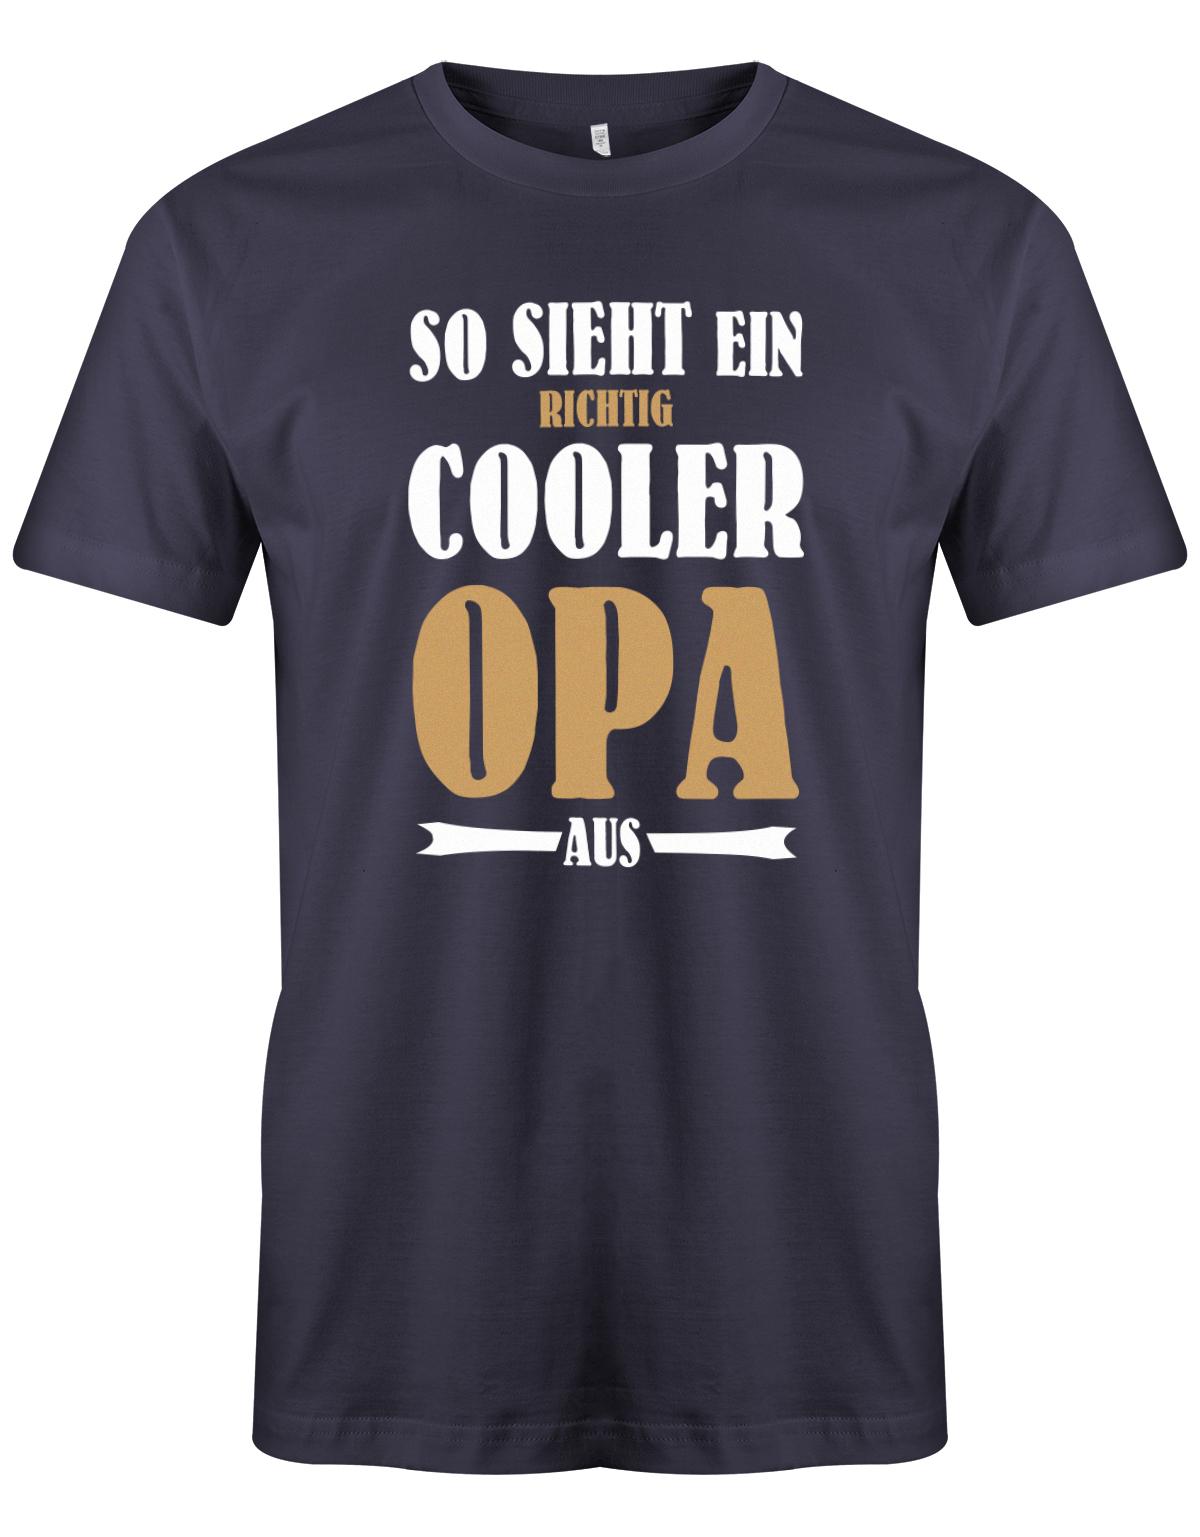 So-sieht-ein-richtig-cooler-Opa-aus-herren-Shirt-navy